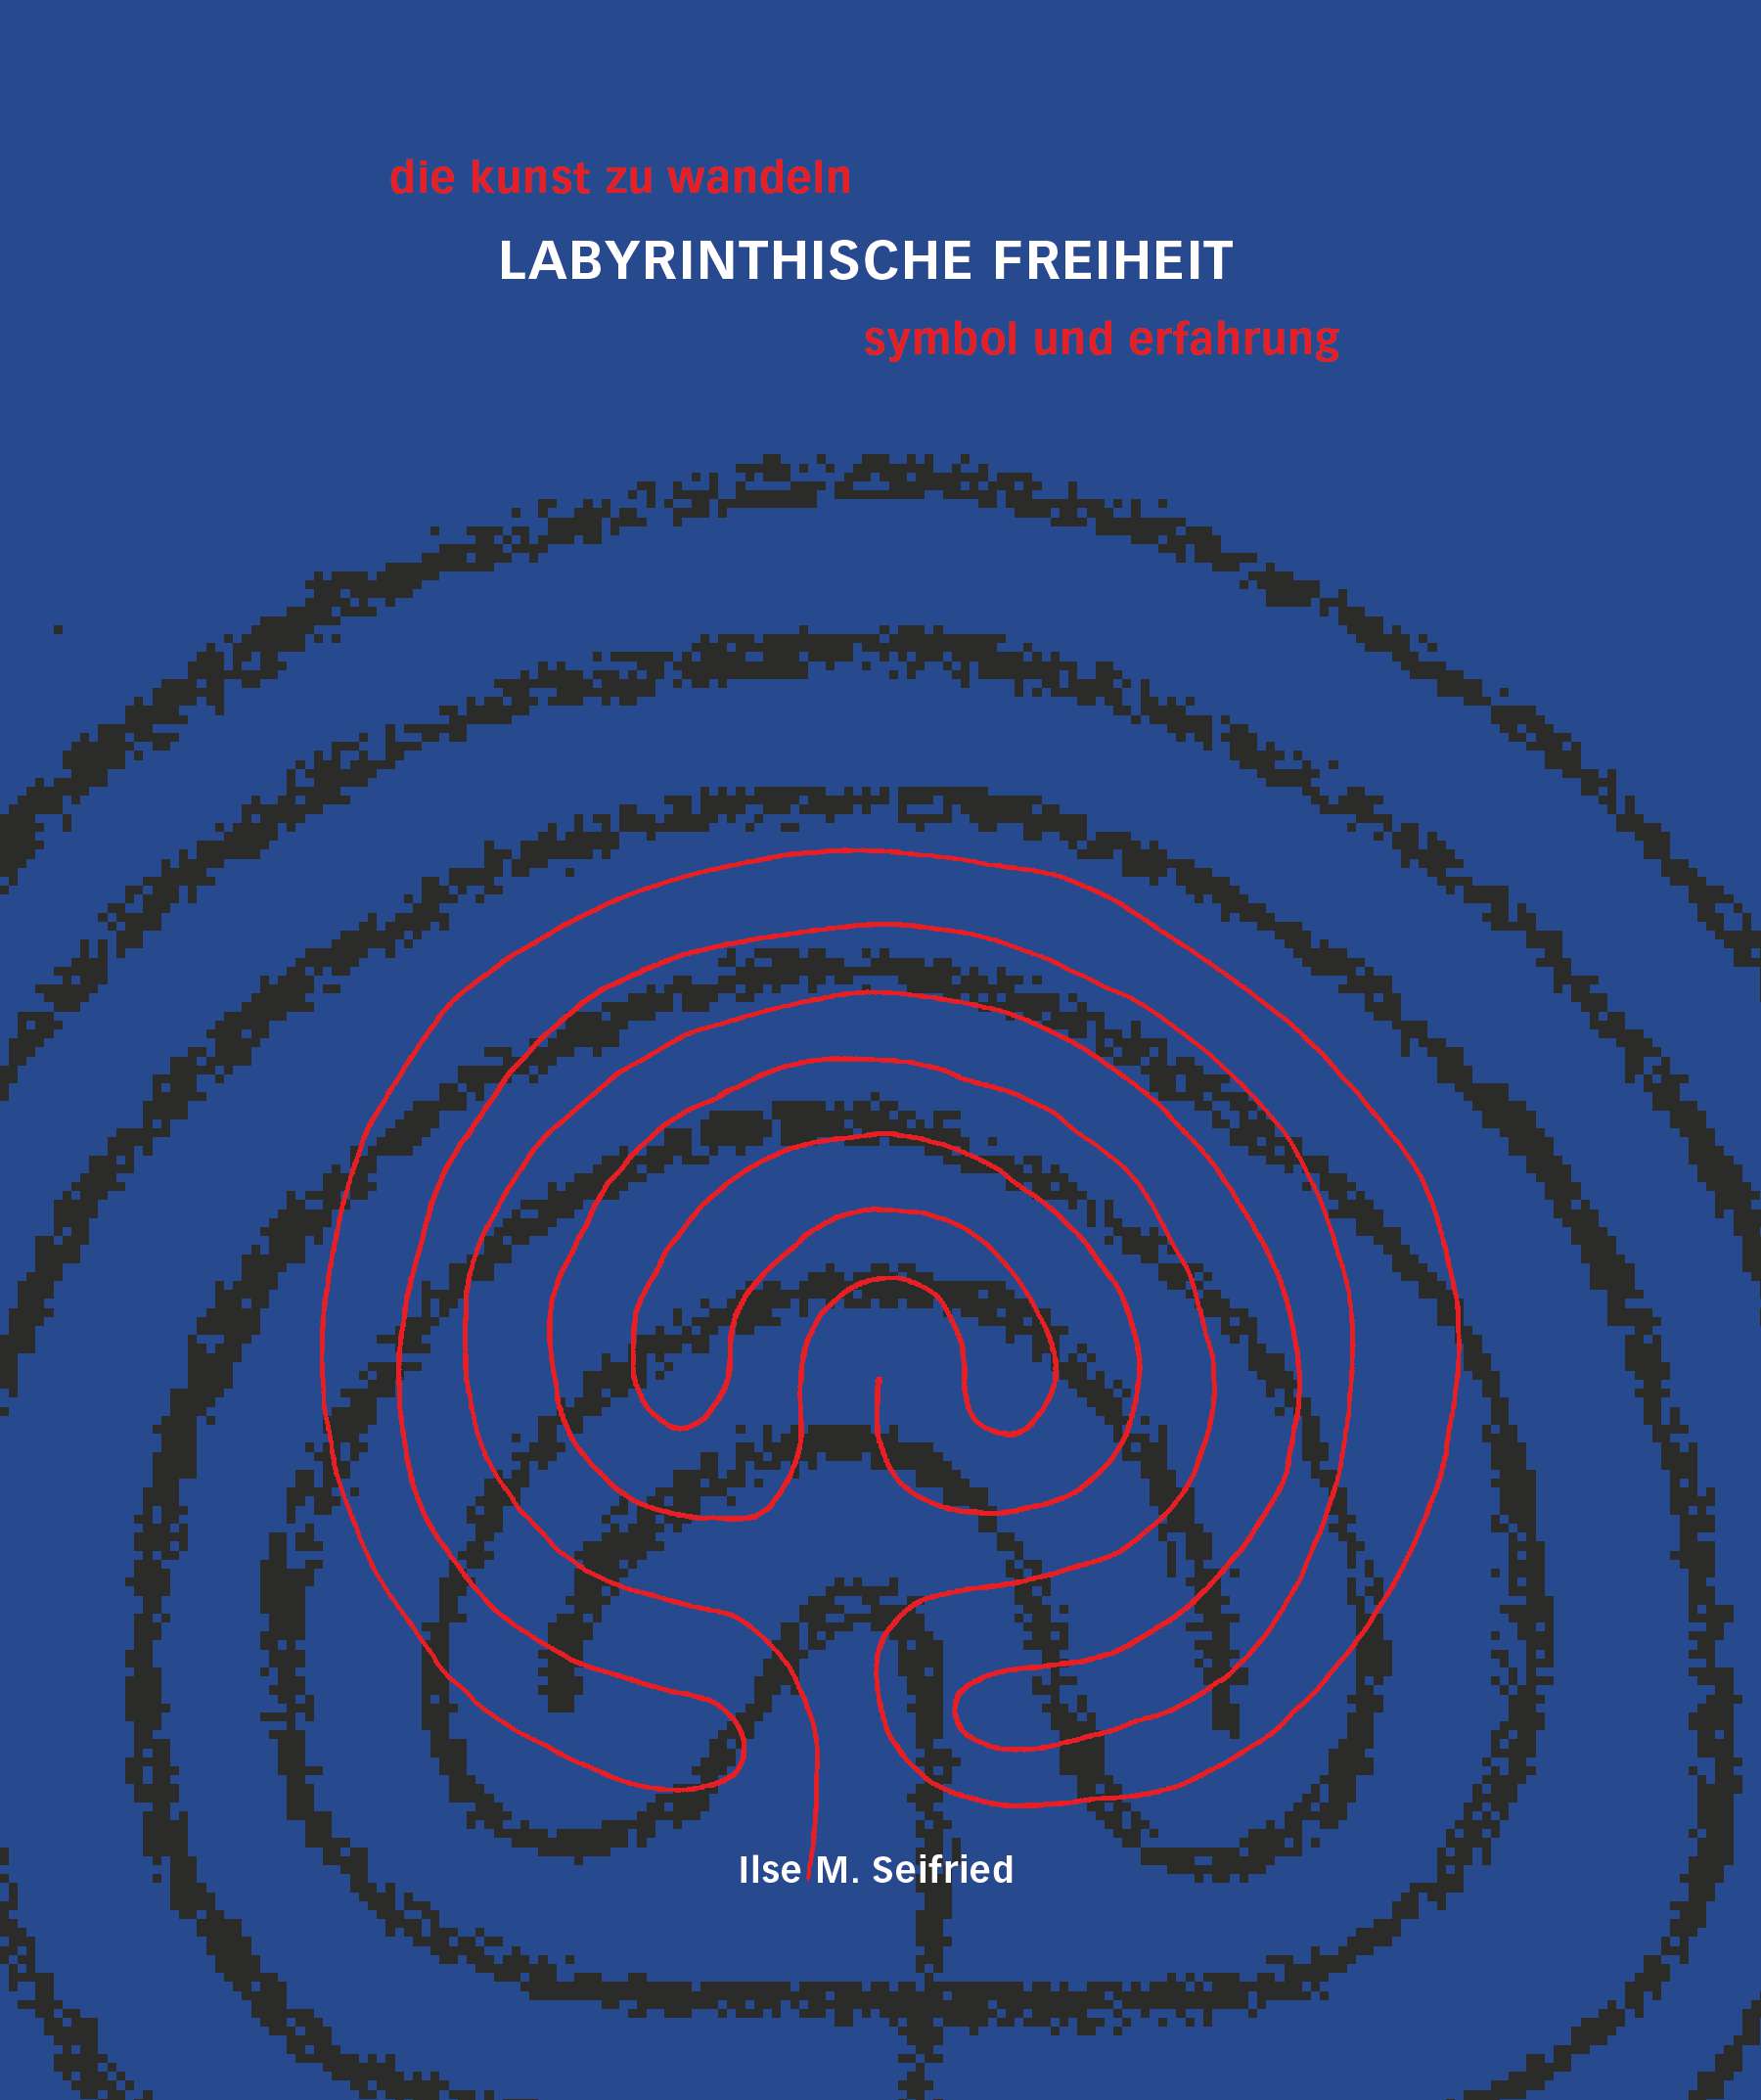 LABYRINTHISCHE FREIHEIT die kunst zu wandeln- das labyrinth - symbol und erfahrung